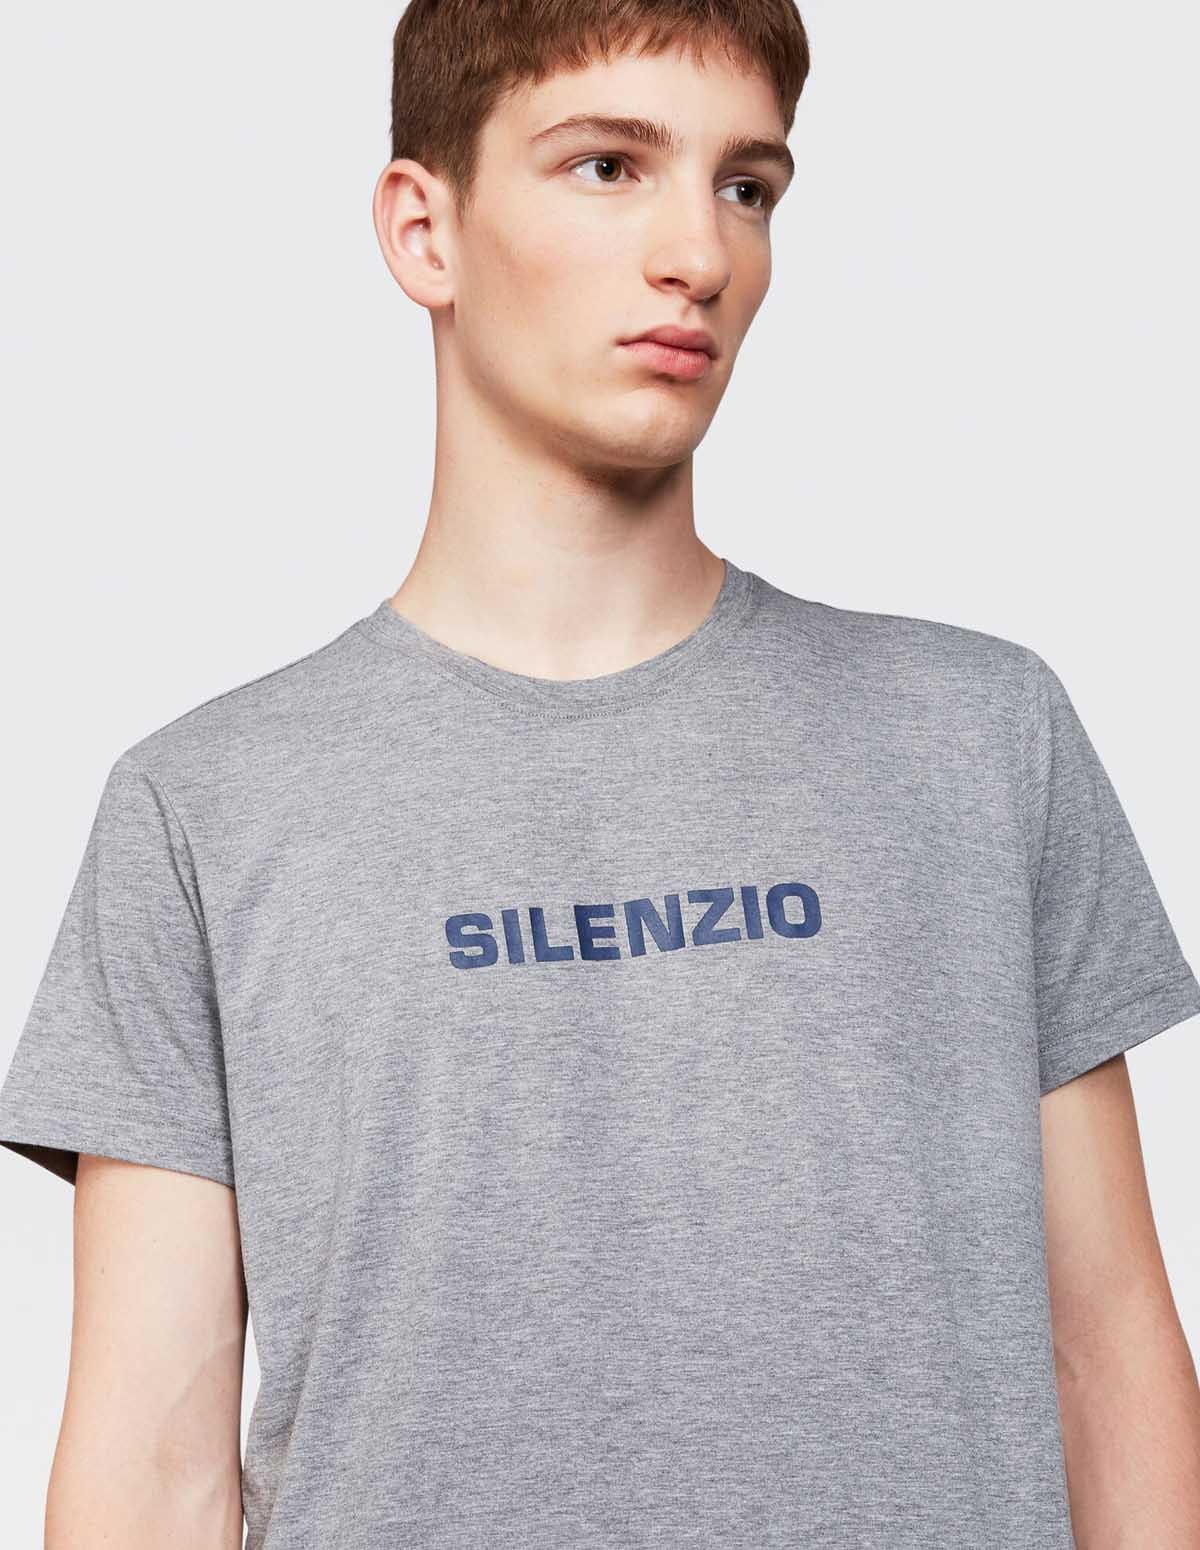 Aspesi T-shirt Silenzio